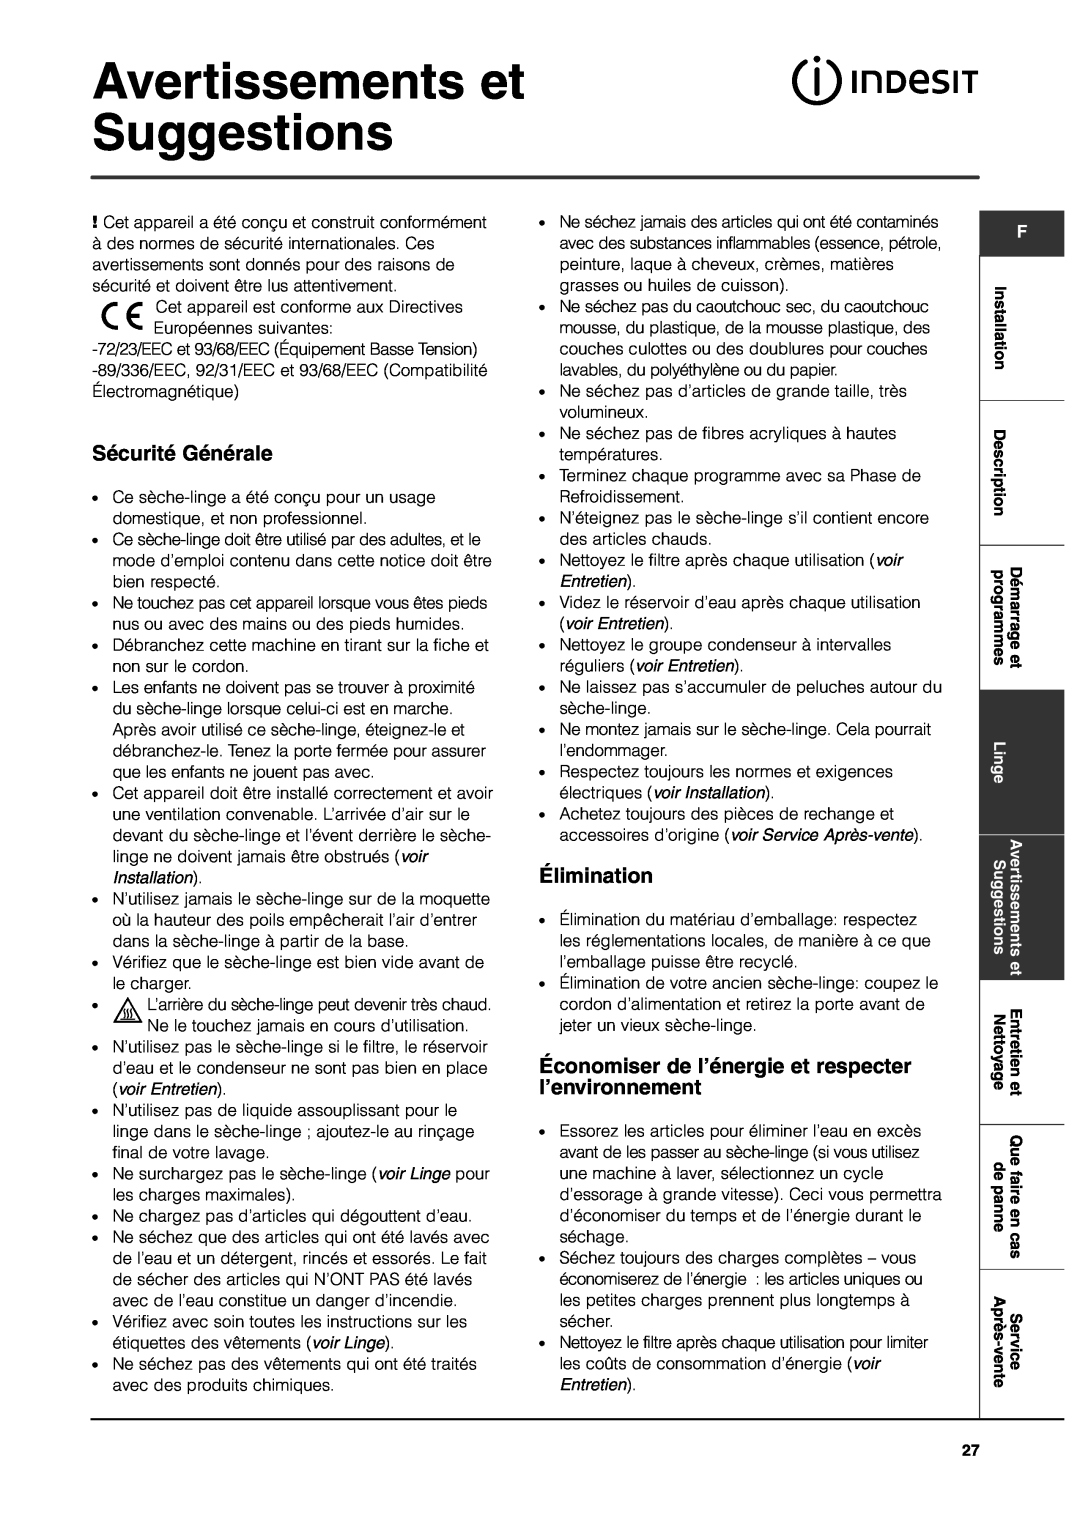 Indesit IS70C manual Avertissements et Suggestions, Sécurité Générale, Élimination 